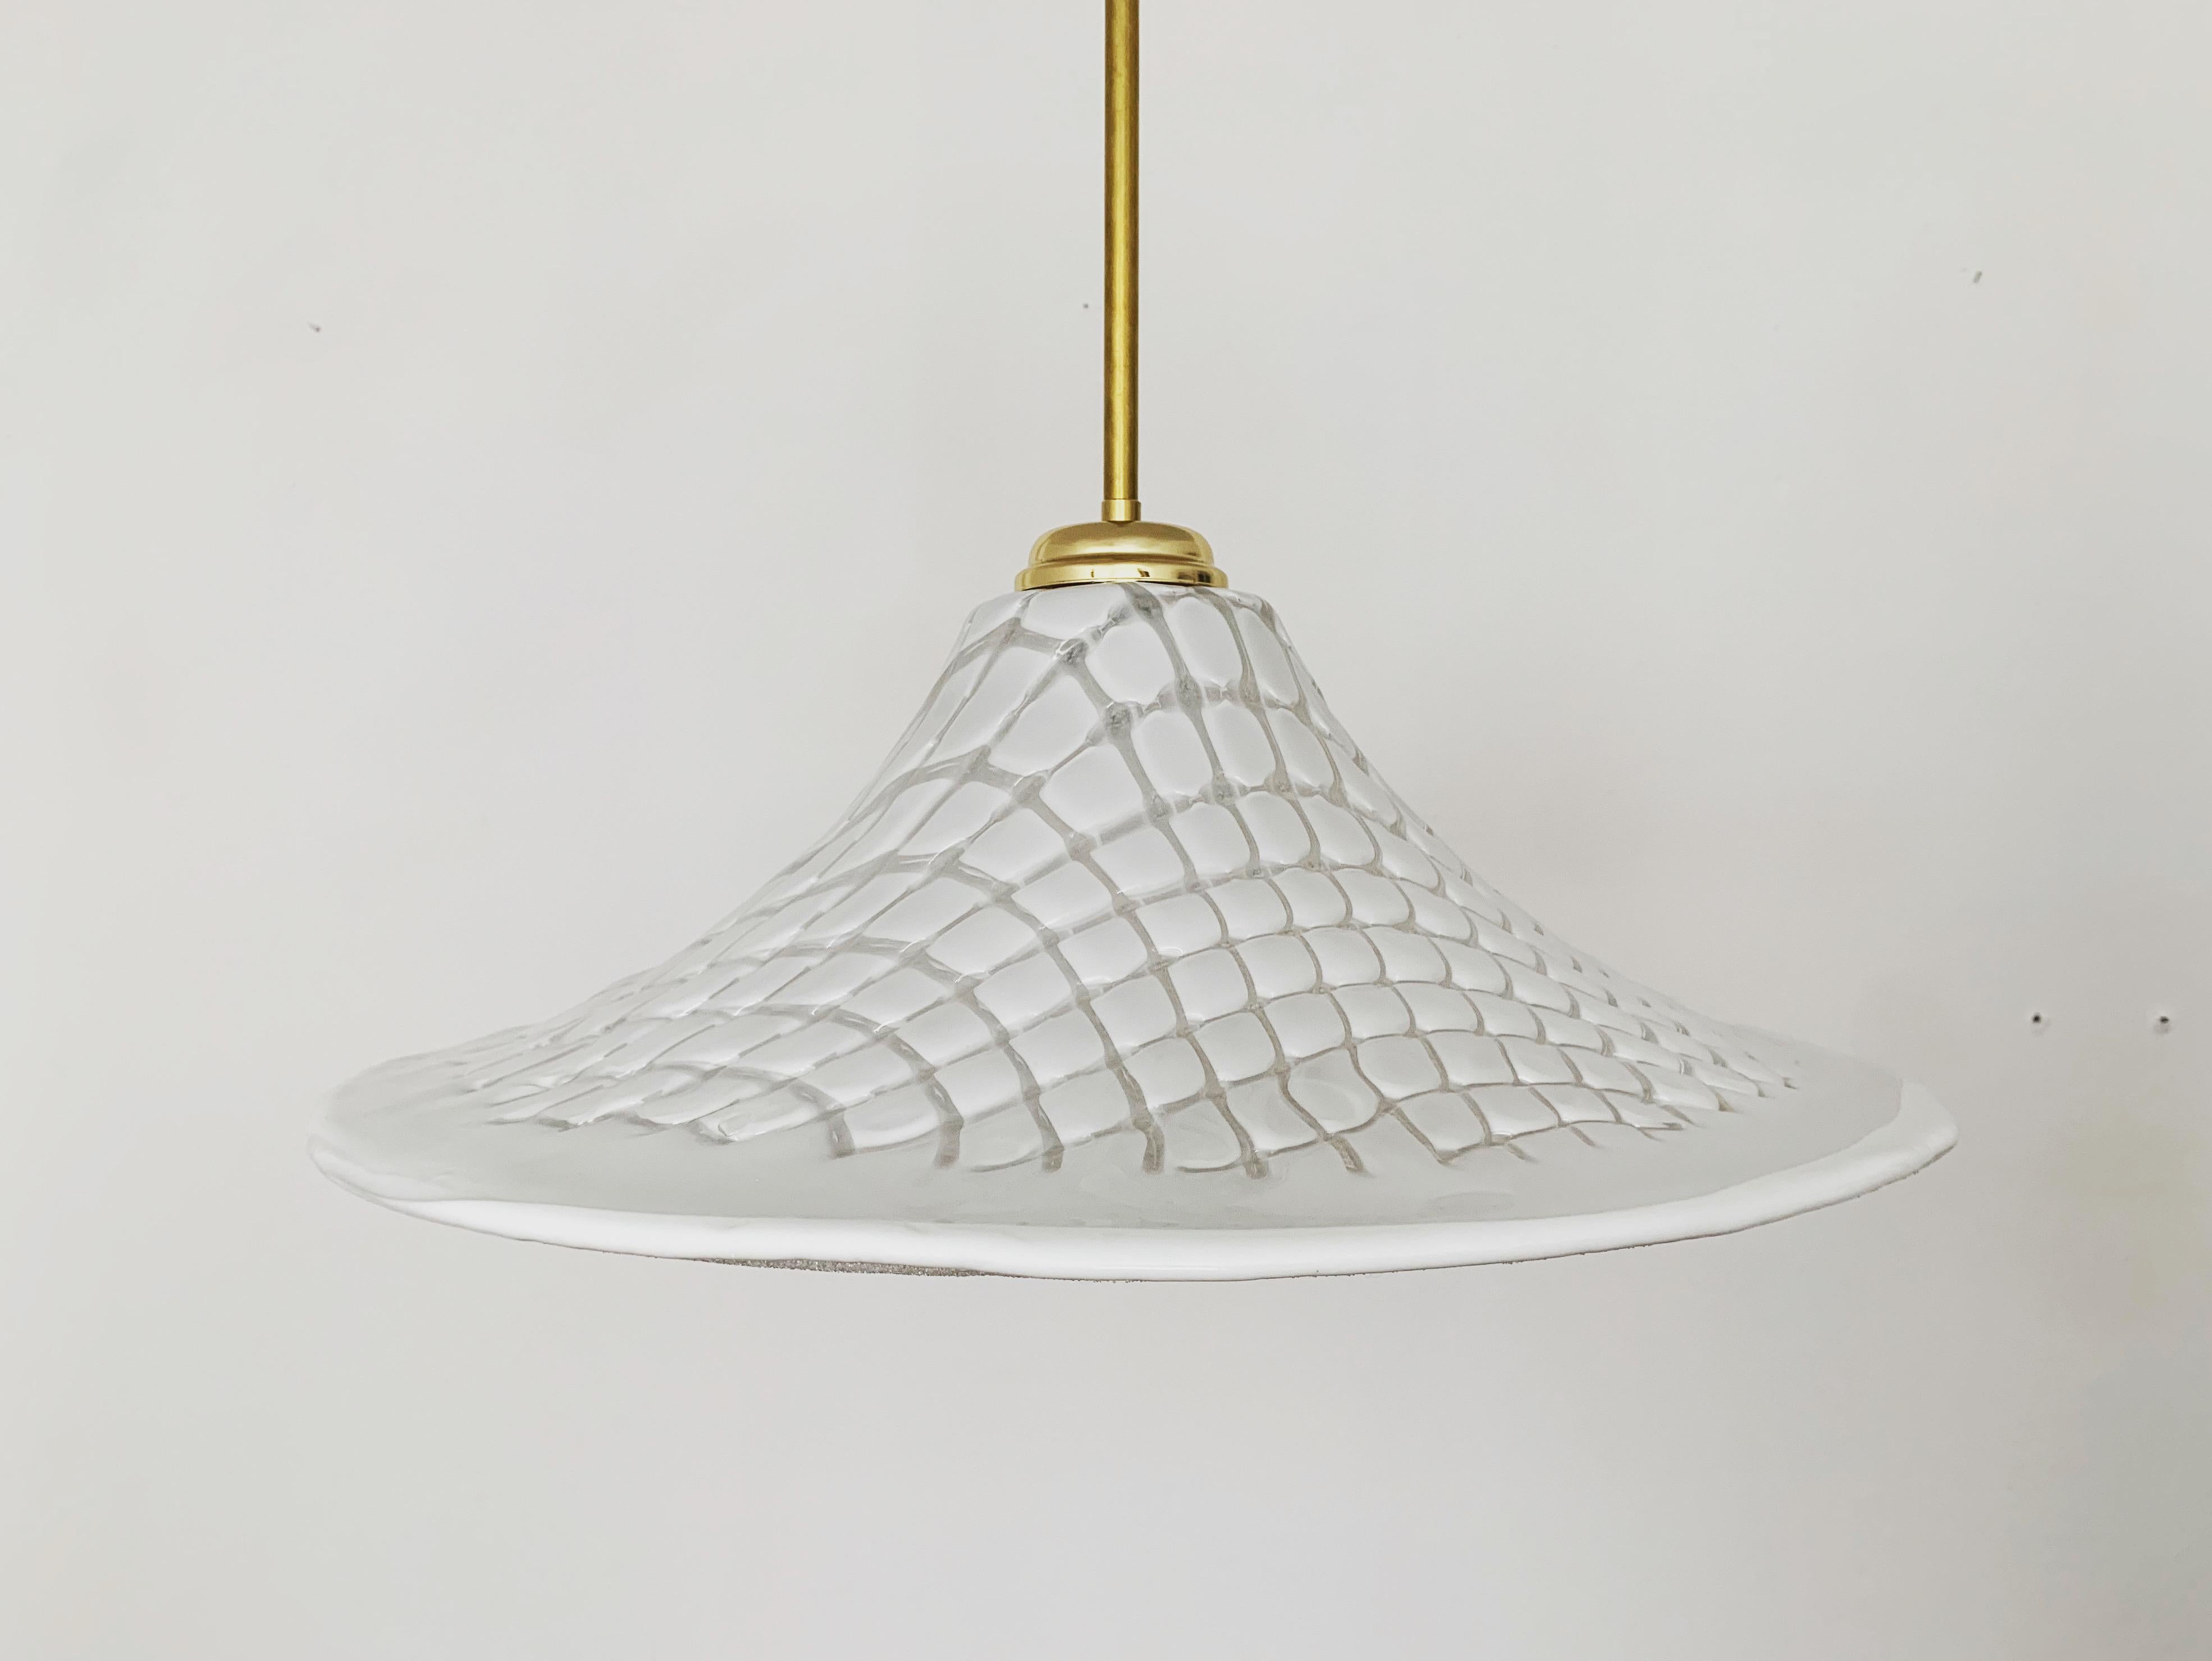 Wunderschöne und große italienische Murano-Lampe aus den 1960er Jahren.
Außergewöhnlich gelungenes Design und sehr hochwertige Verarbeitung.
Die Lampe ist sehr elegant.
Die dreidimensionale Struktur schafft ein sehr gemütliches